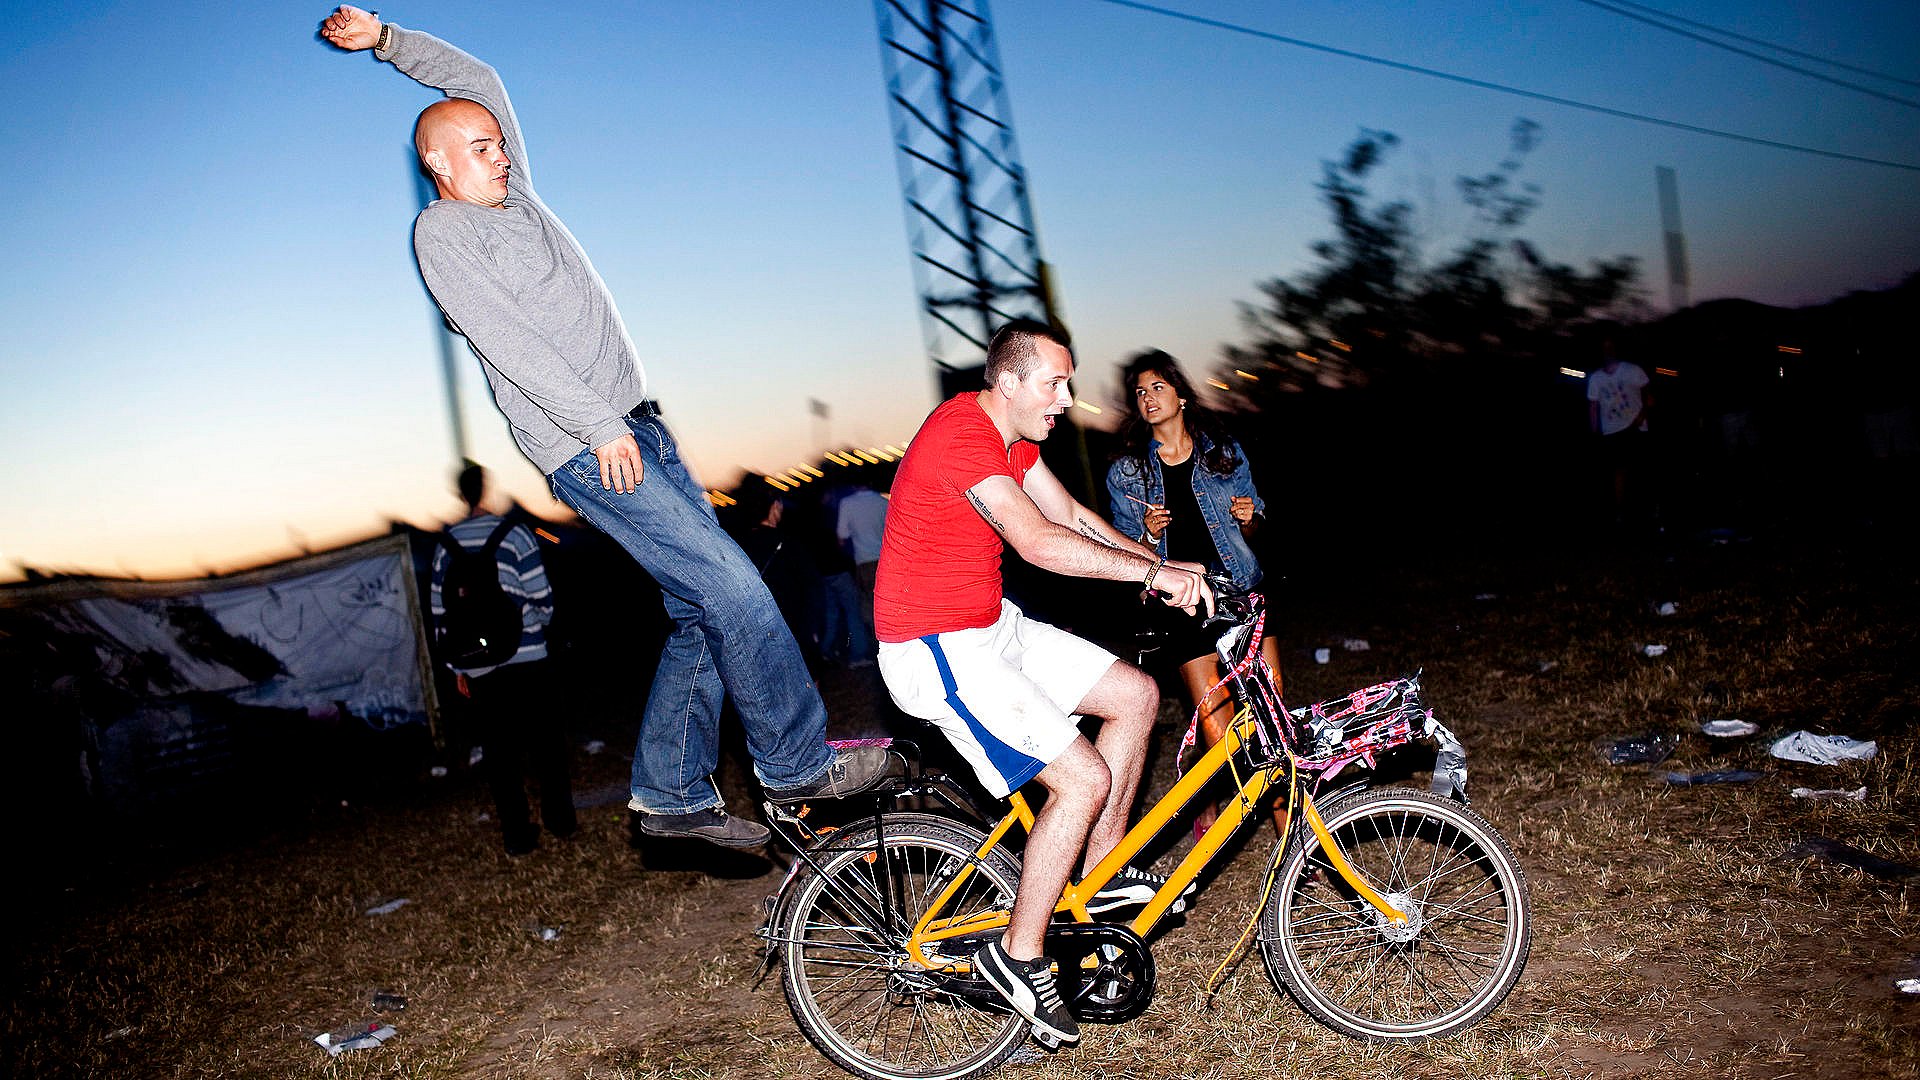 Bøderegn fulde cyklister: Så må du på cyklen | TV 2 Kosmopol